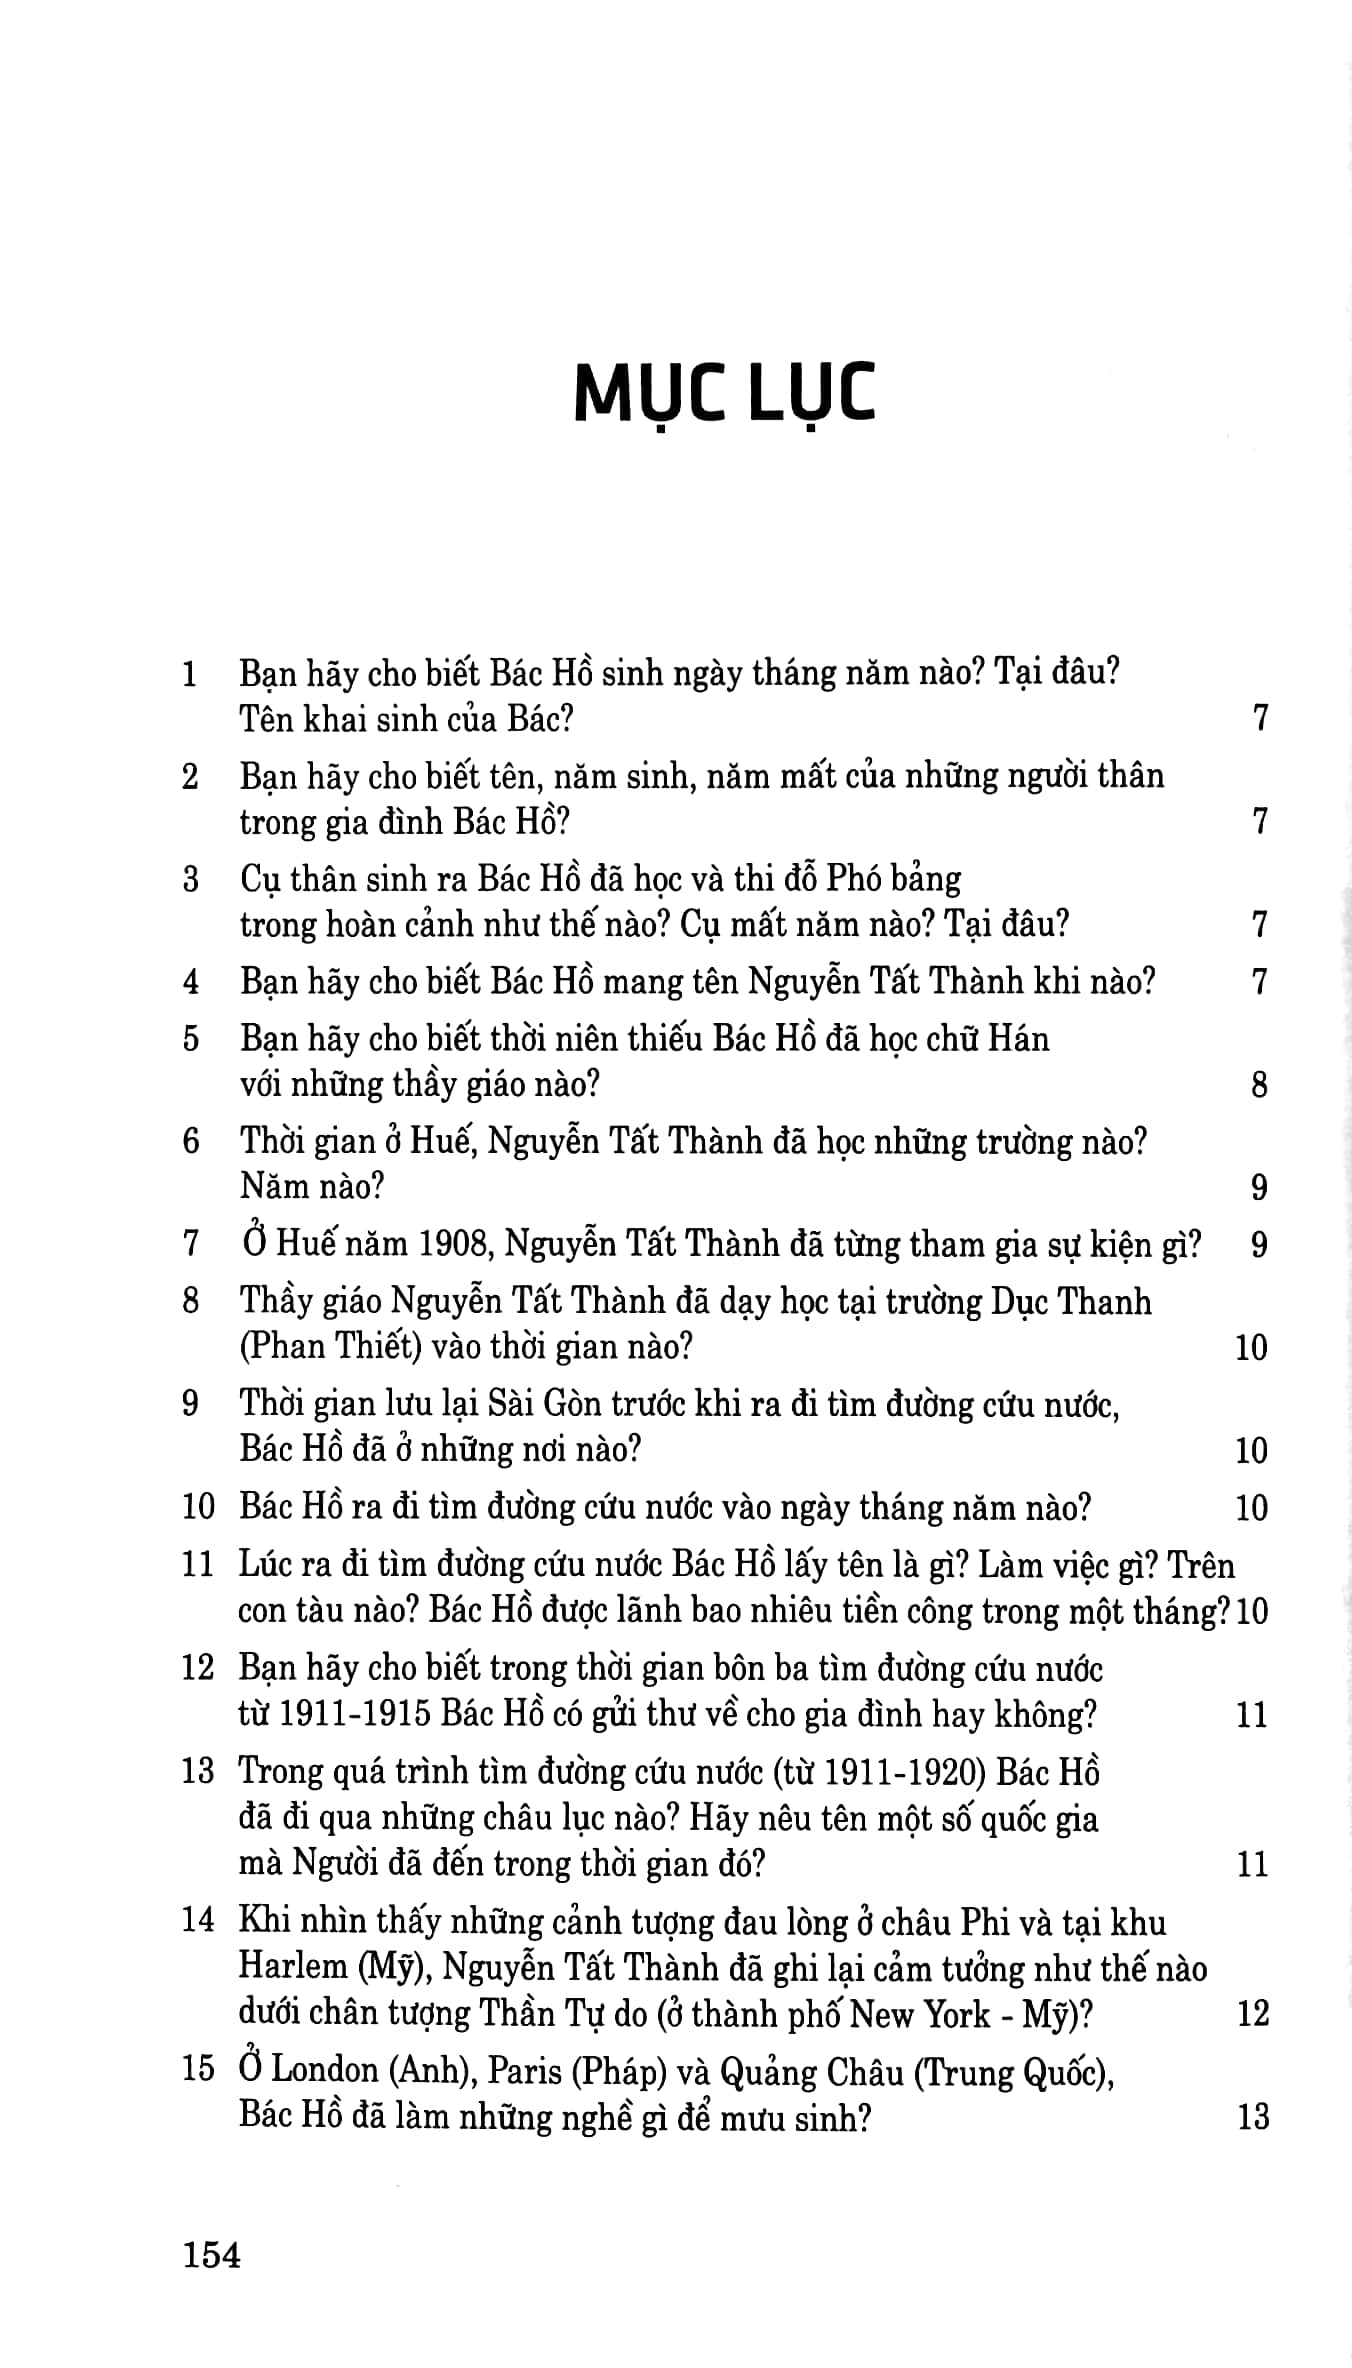 Di Sản Hồ Chí Minh - Hỏi & Đáp Về Cuộc Đời & Sự Nghiệp Của Chủ Tịch Hồ Chí Minh PDF